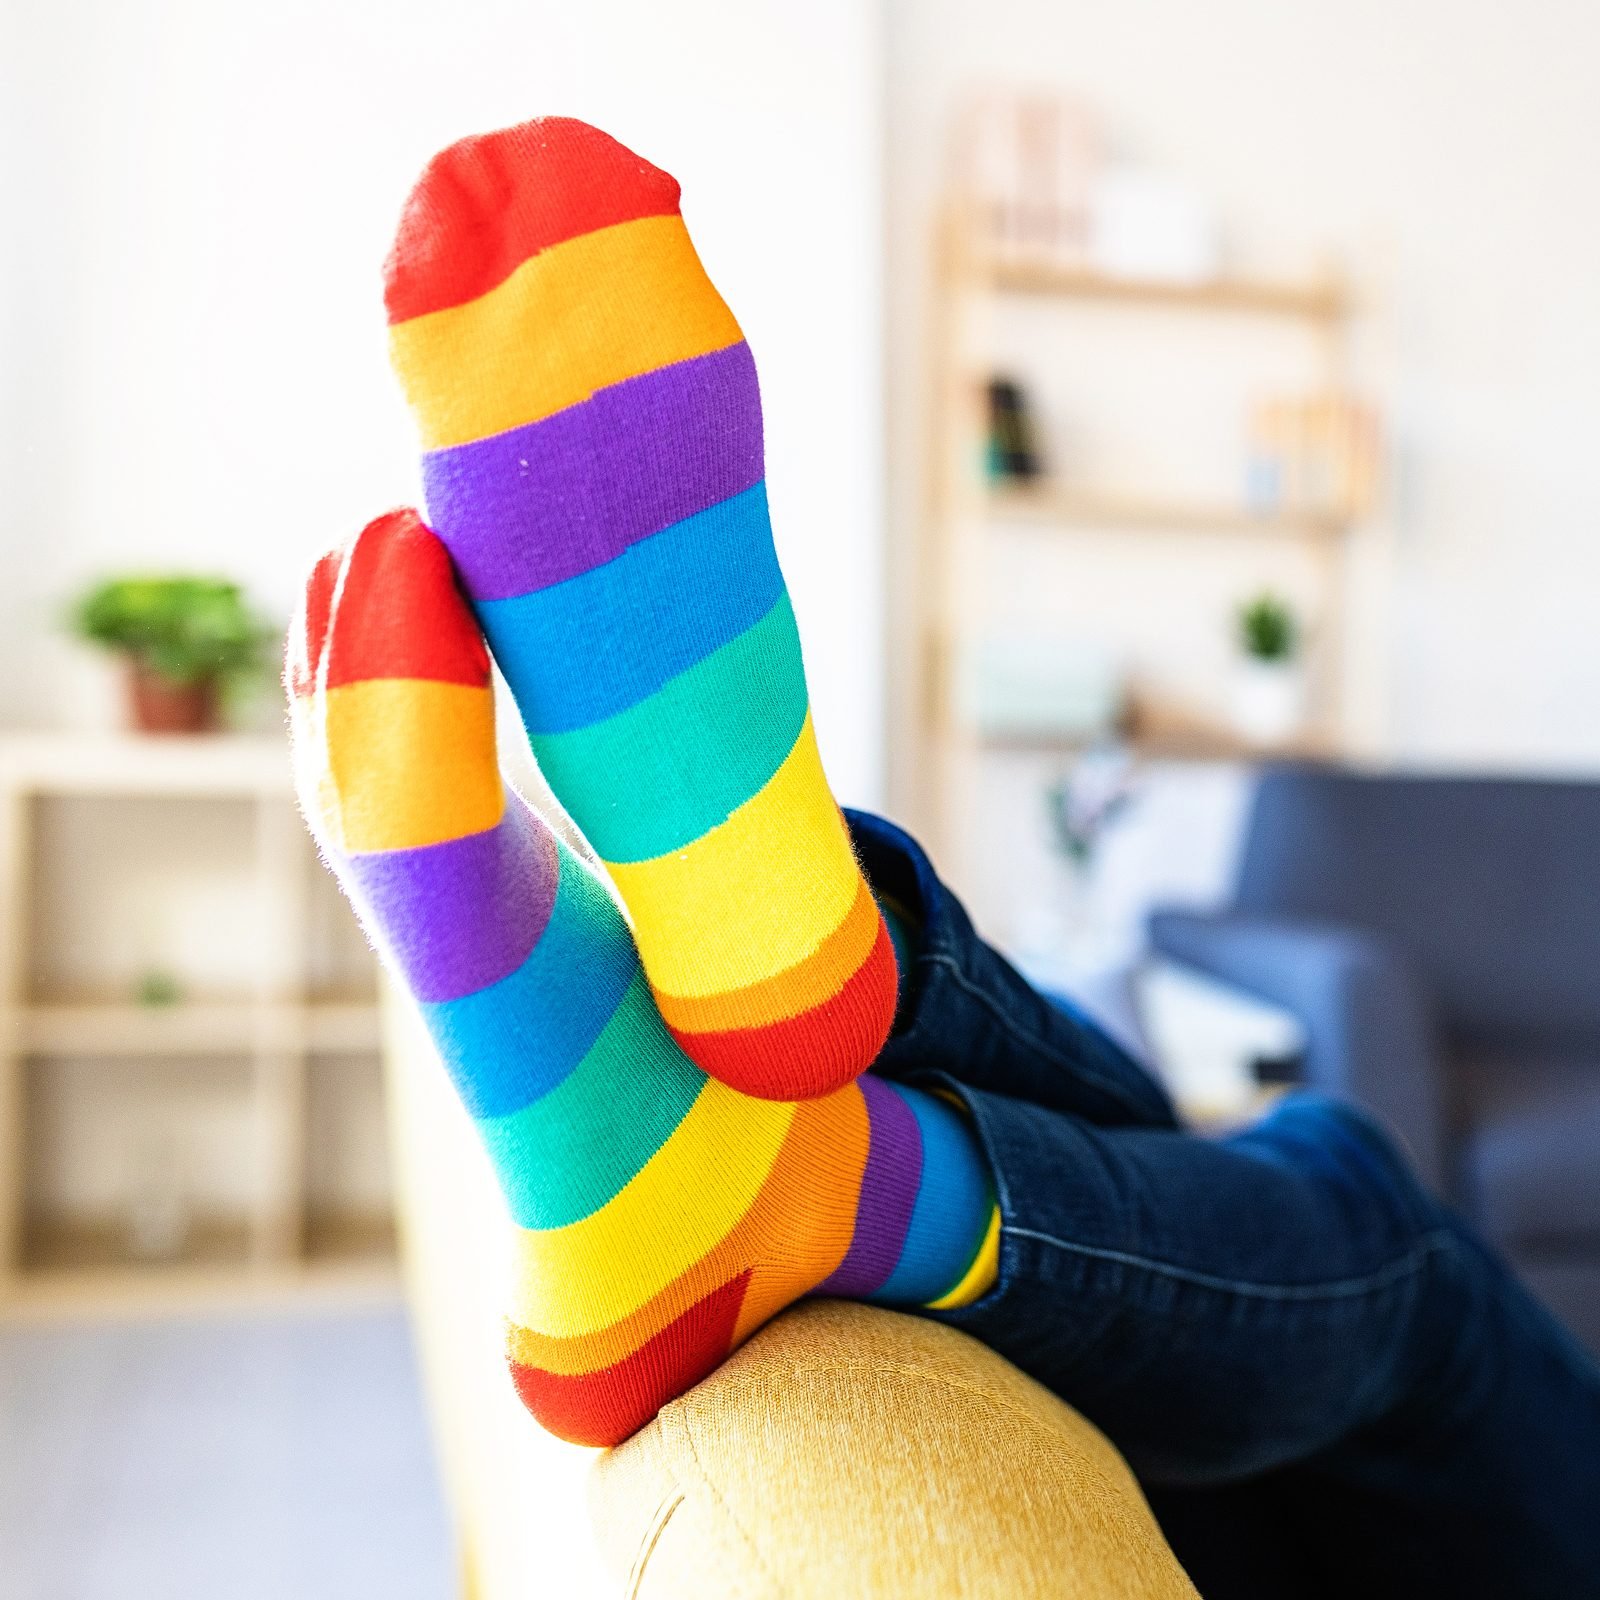 Rainbow Striped Toe Socks - Pair